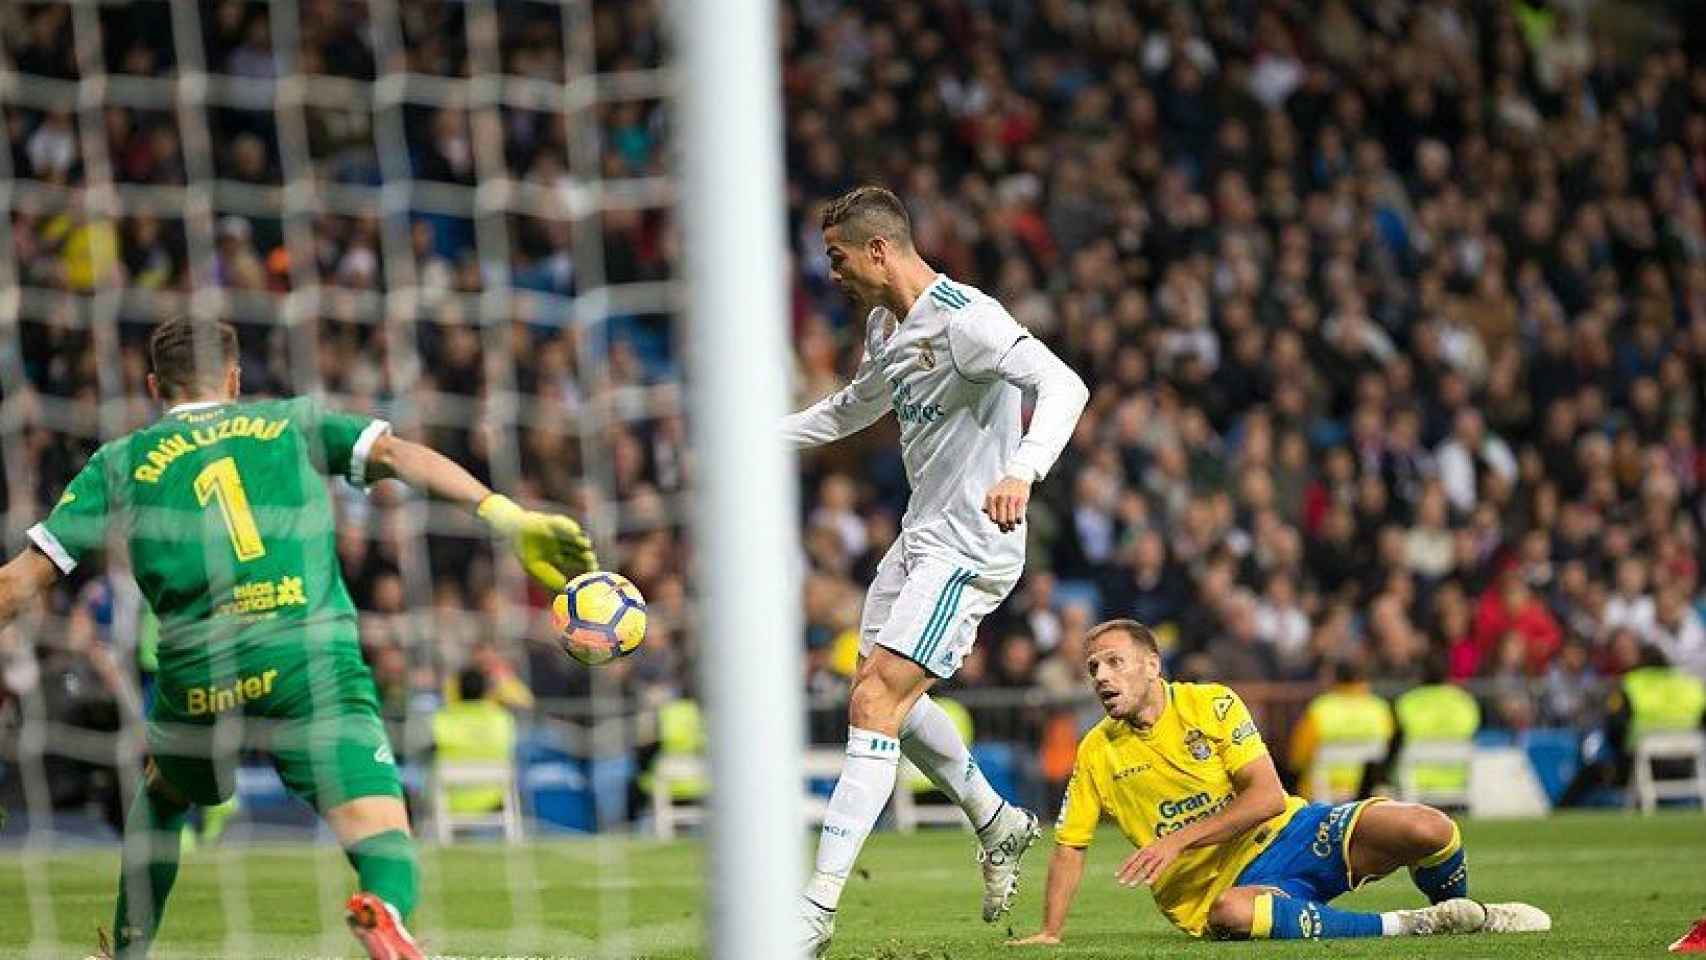 Cristiano lo intenta una vez más, pero sin suerte. Foto: Pedro Rodríguez / El Bernabéu